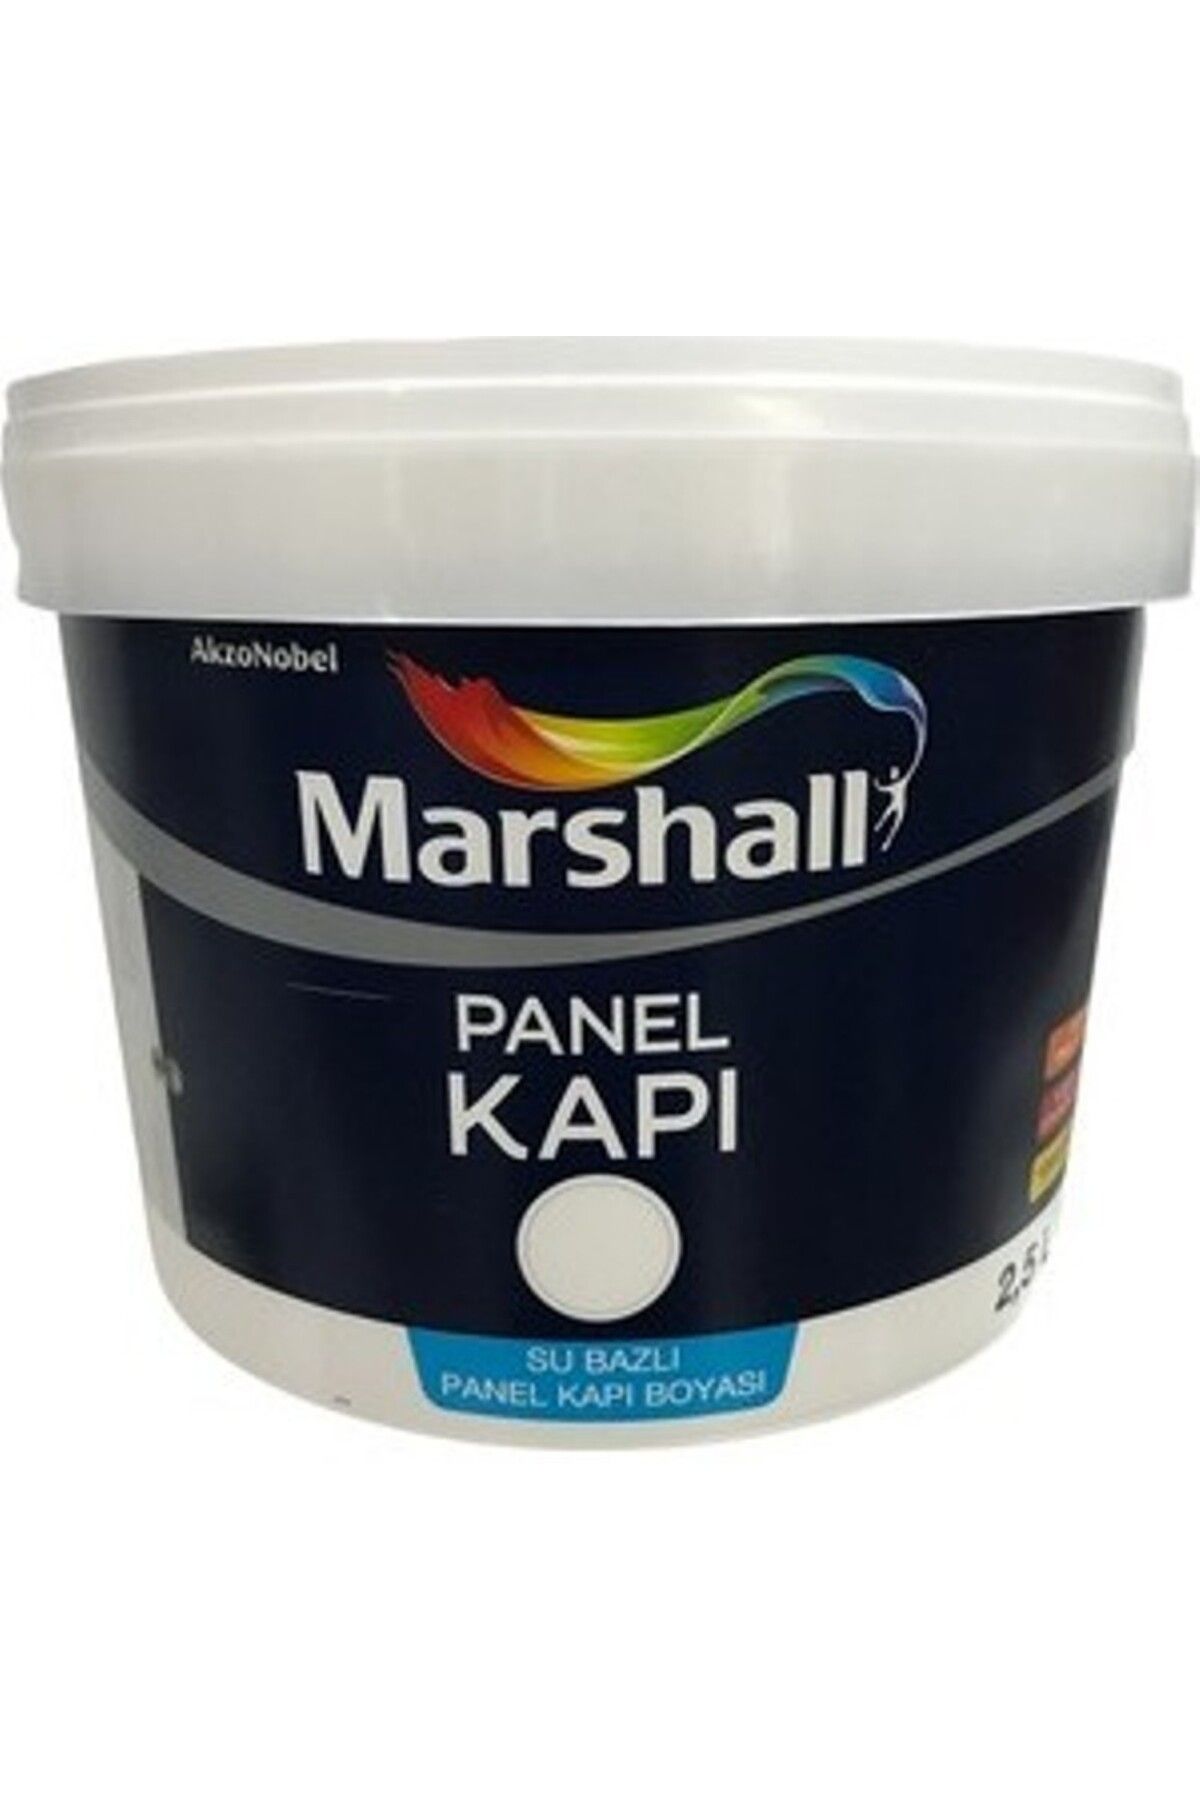 Marshall Panel Kapı Boyası 2,5 litre - DAMLA SAKIZI